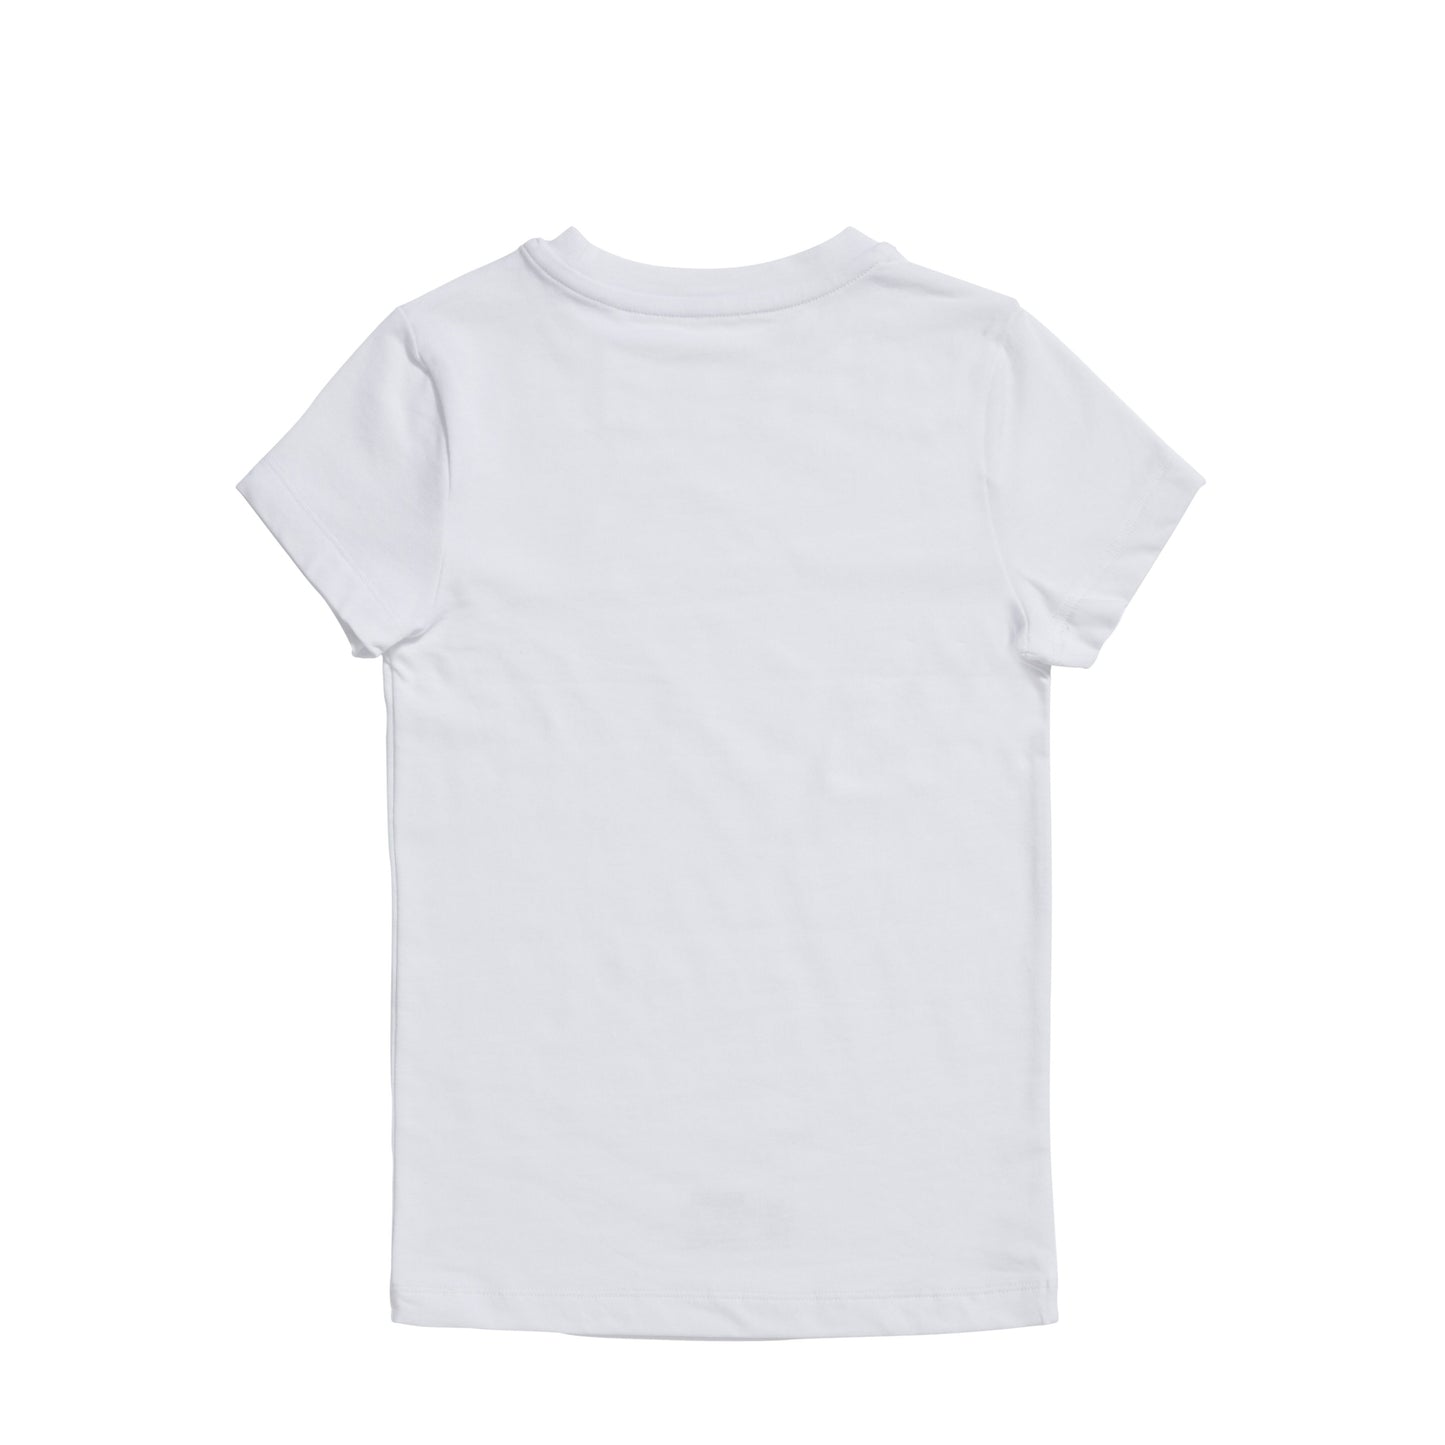 Boys basic t-shirt 30041 001 white